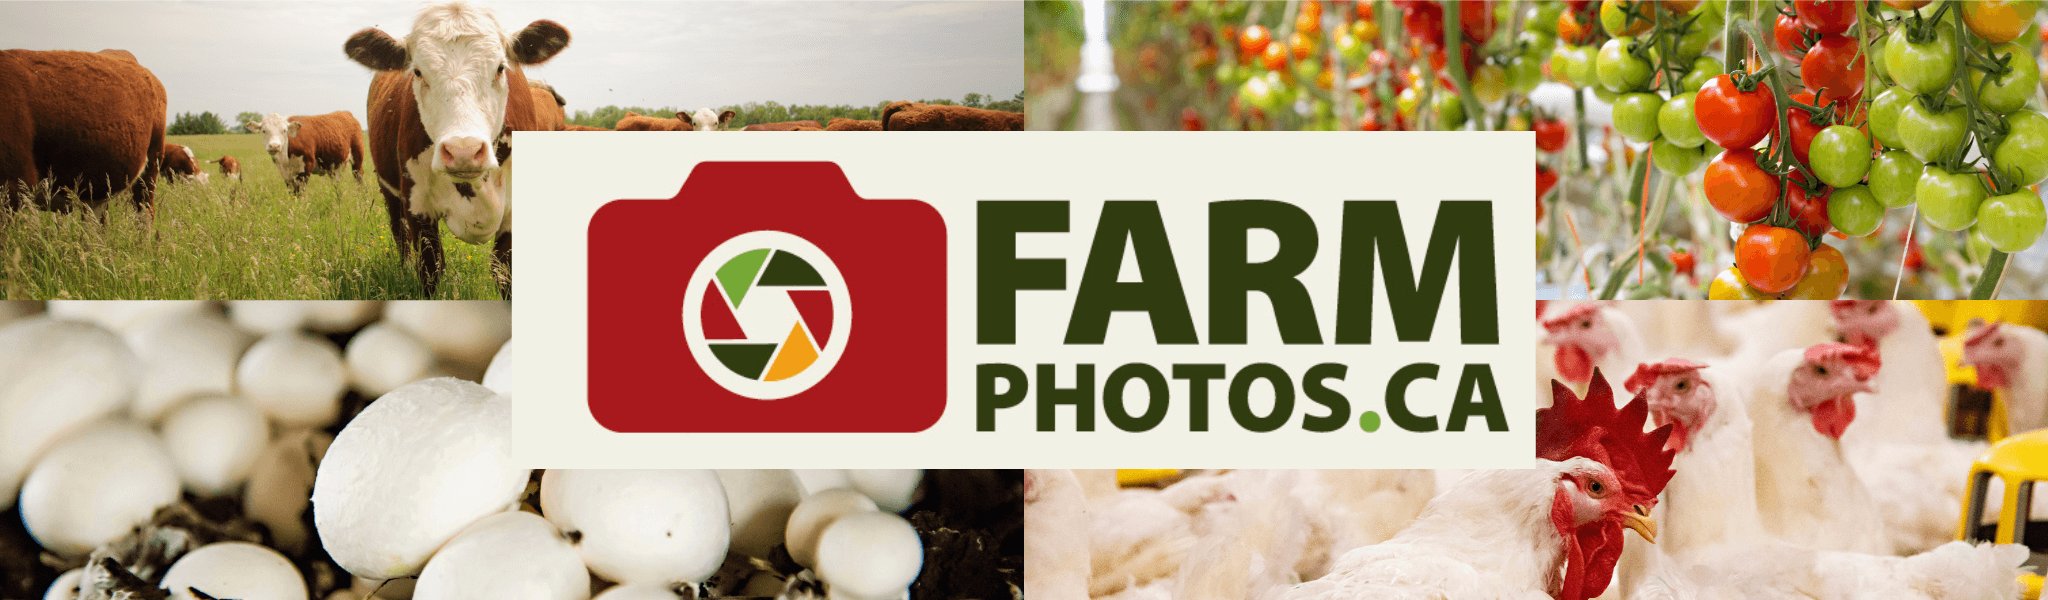 FarmPhotos.ca